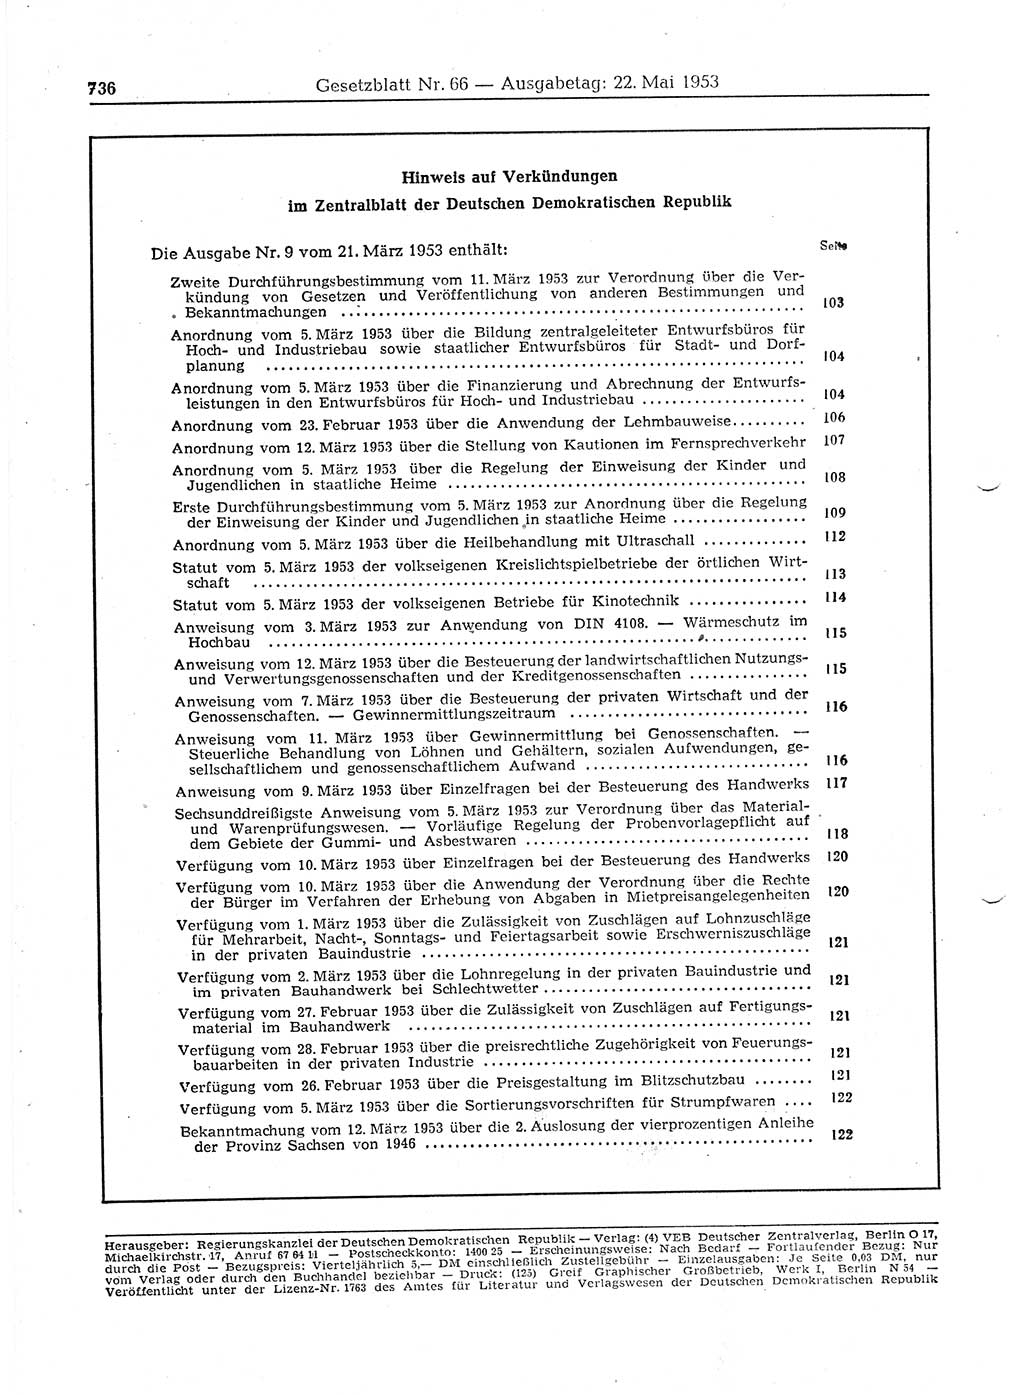 Gesetzblatt (GBl.) der Deutschen Demokratischen Republik (DDR) 1953, Seite 736 (GBl. DDR 1953, S. 736)